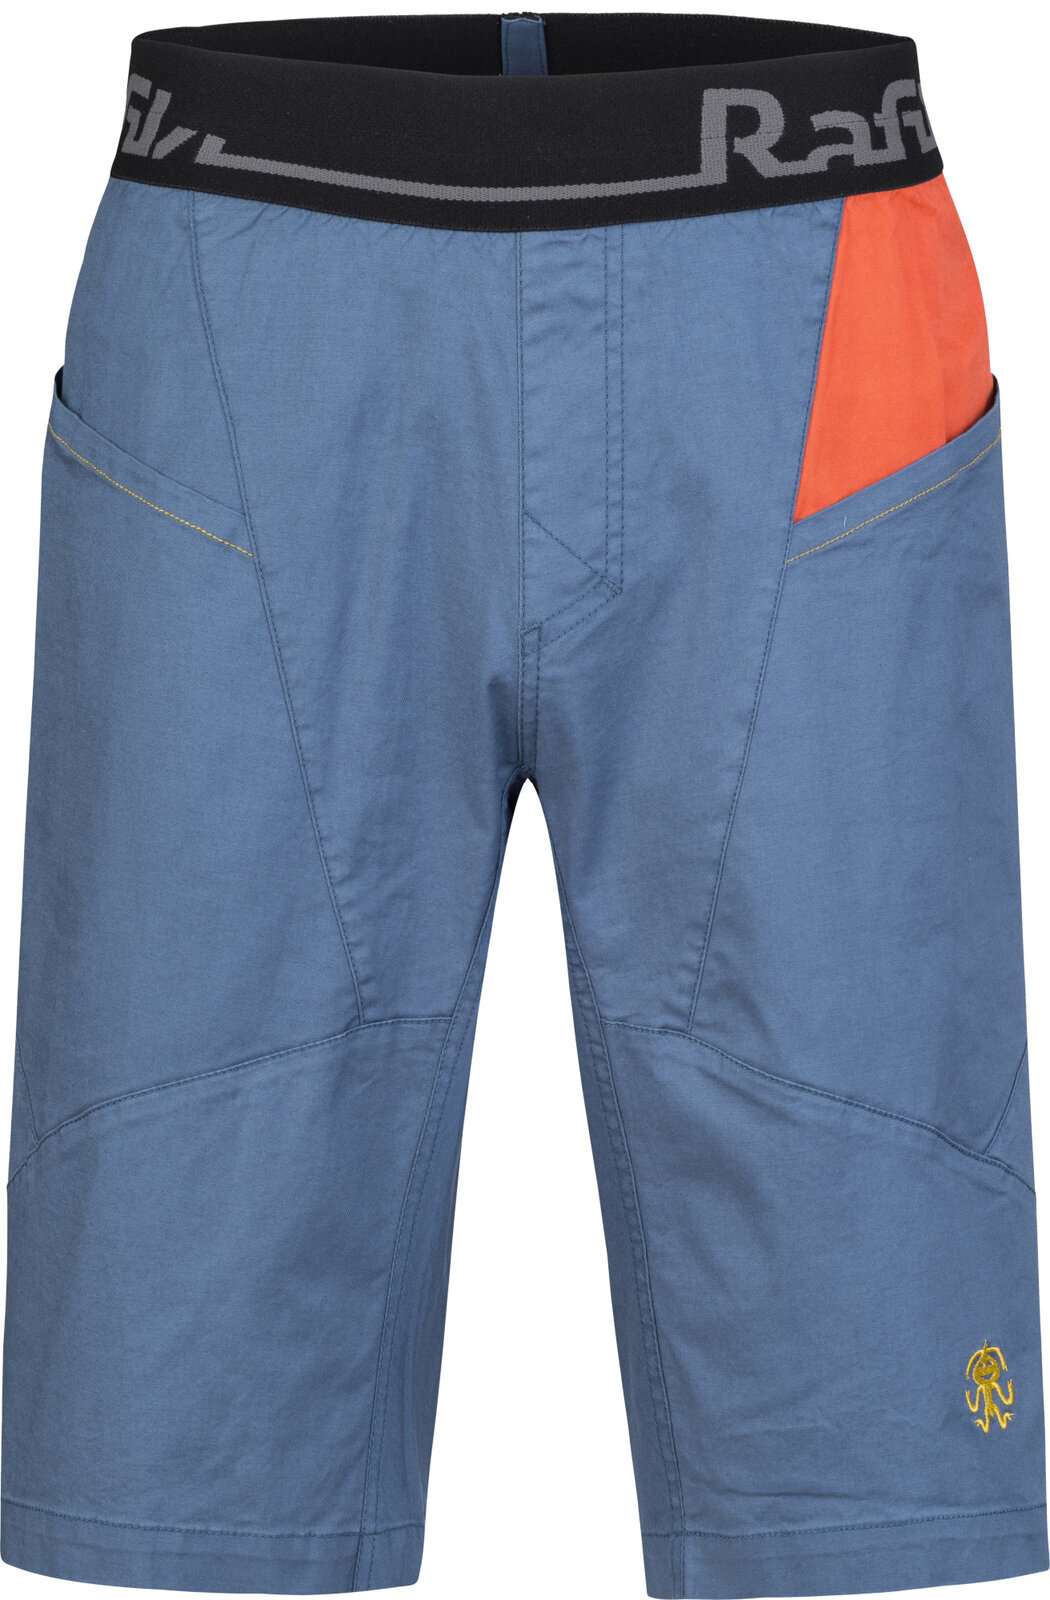 Outdoorové šortky Rafiki Megos Man Shorts Ensign Blue/Clay M Outdoorové šortky